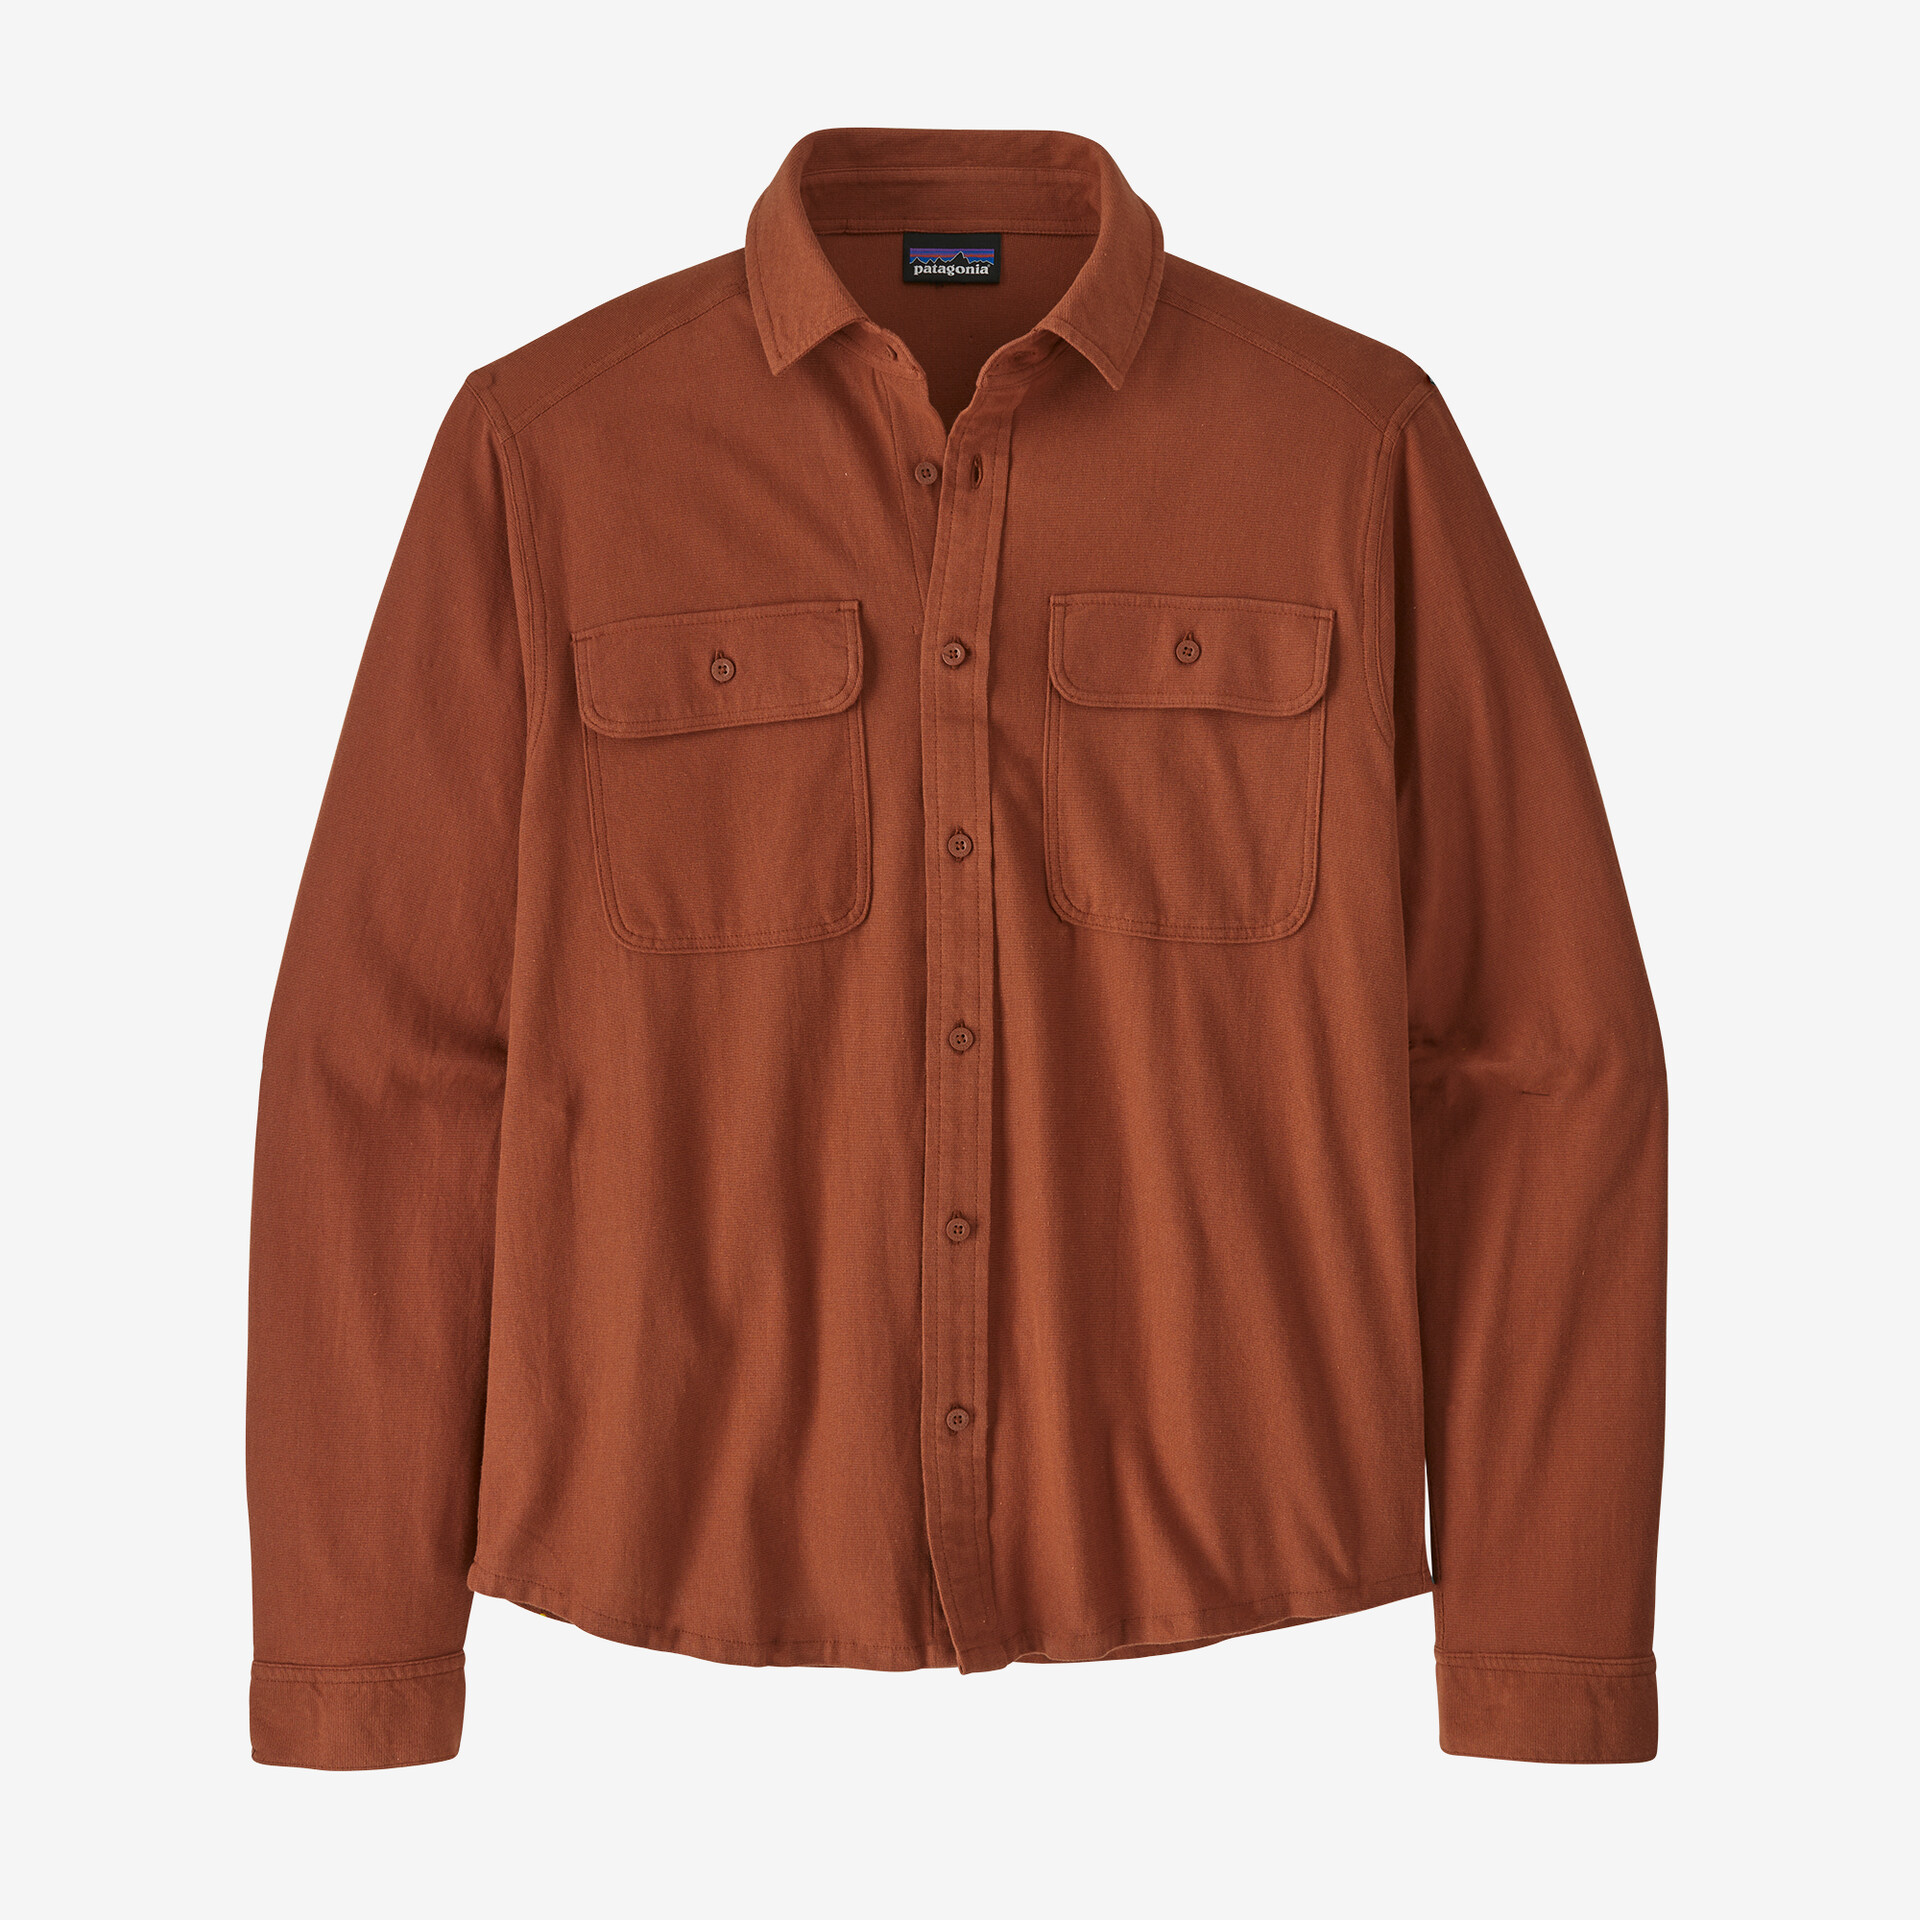 Мужская рубашка Knoven Patagonia, коричневый мужская рубашка knoven patagonia цвет oar tan